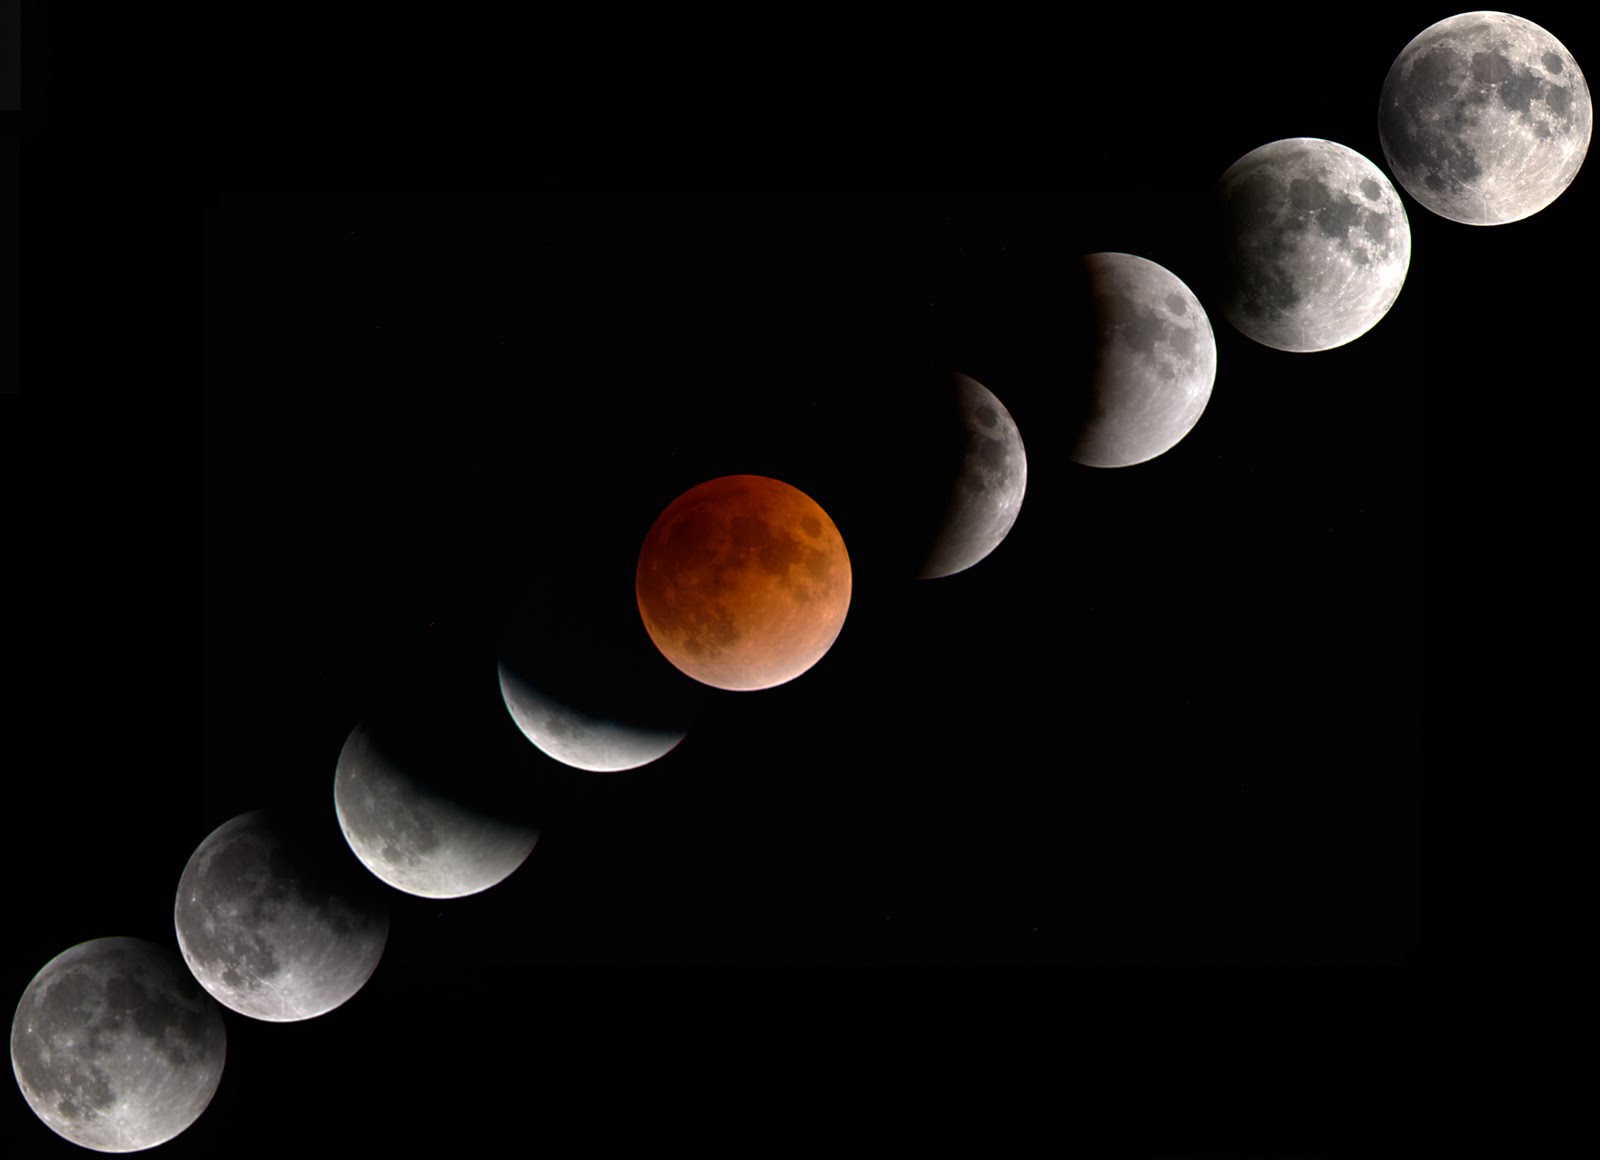 lunar eclipse time lapse 2015